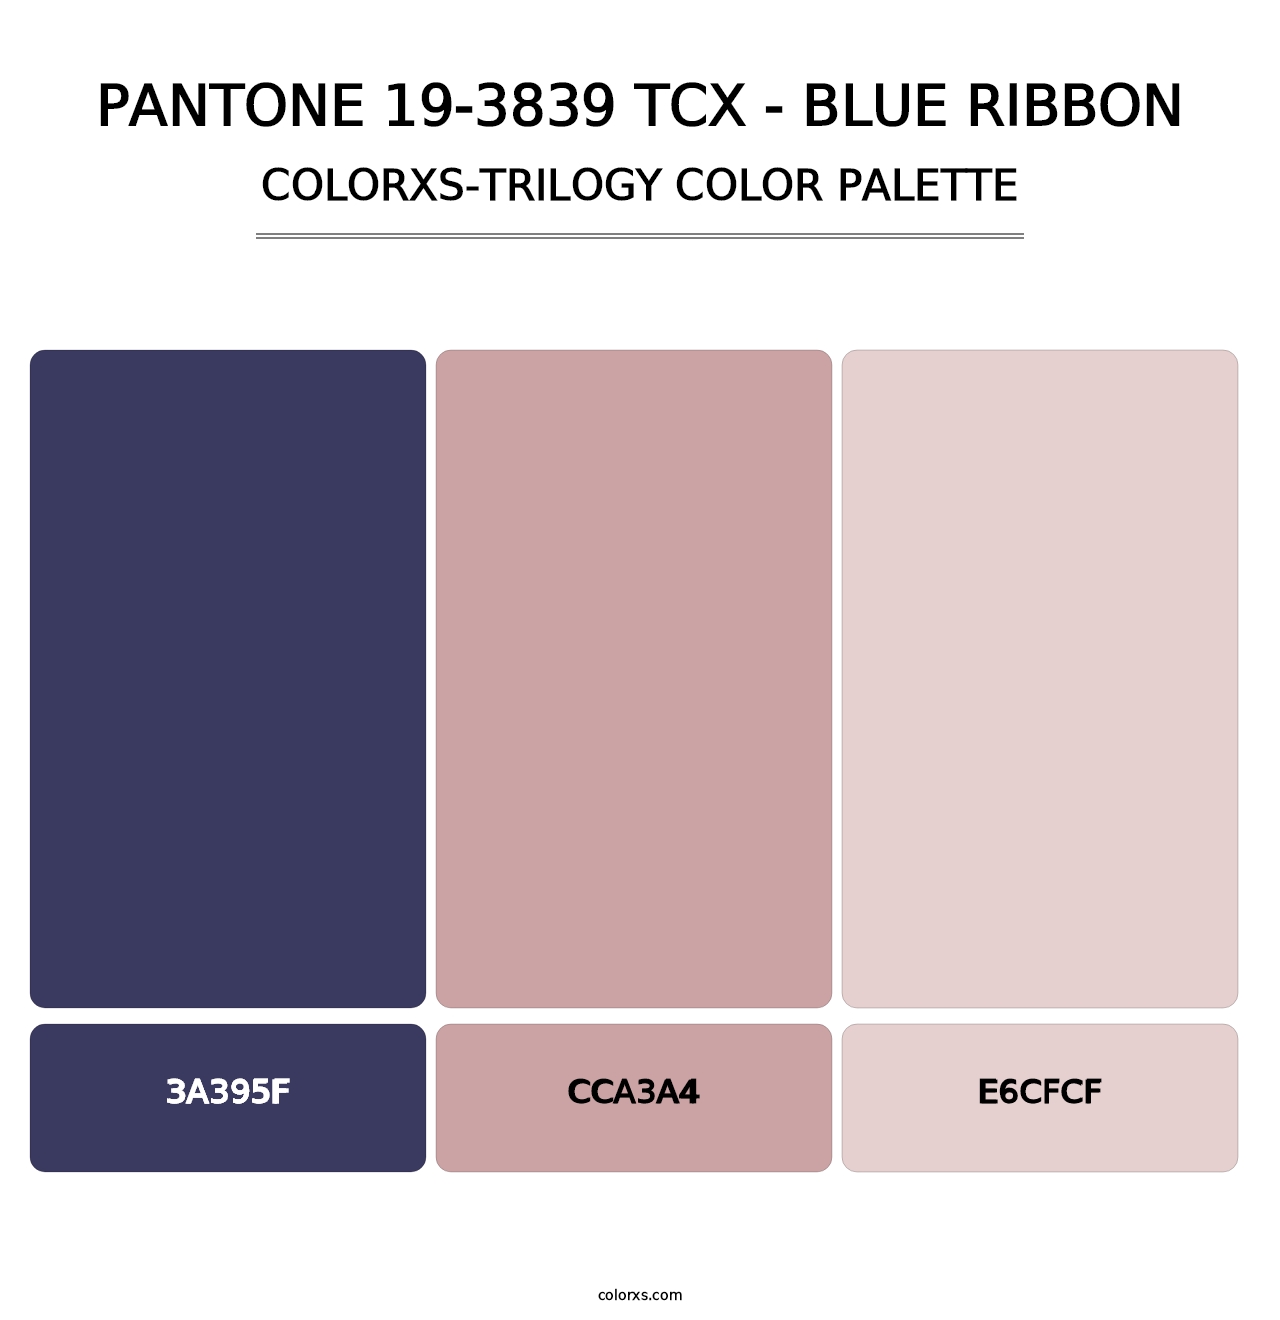 PANTONE 19-3839 TCX - Blue Ribbon - Colorxs Trilogy Palette